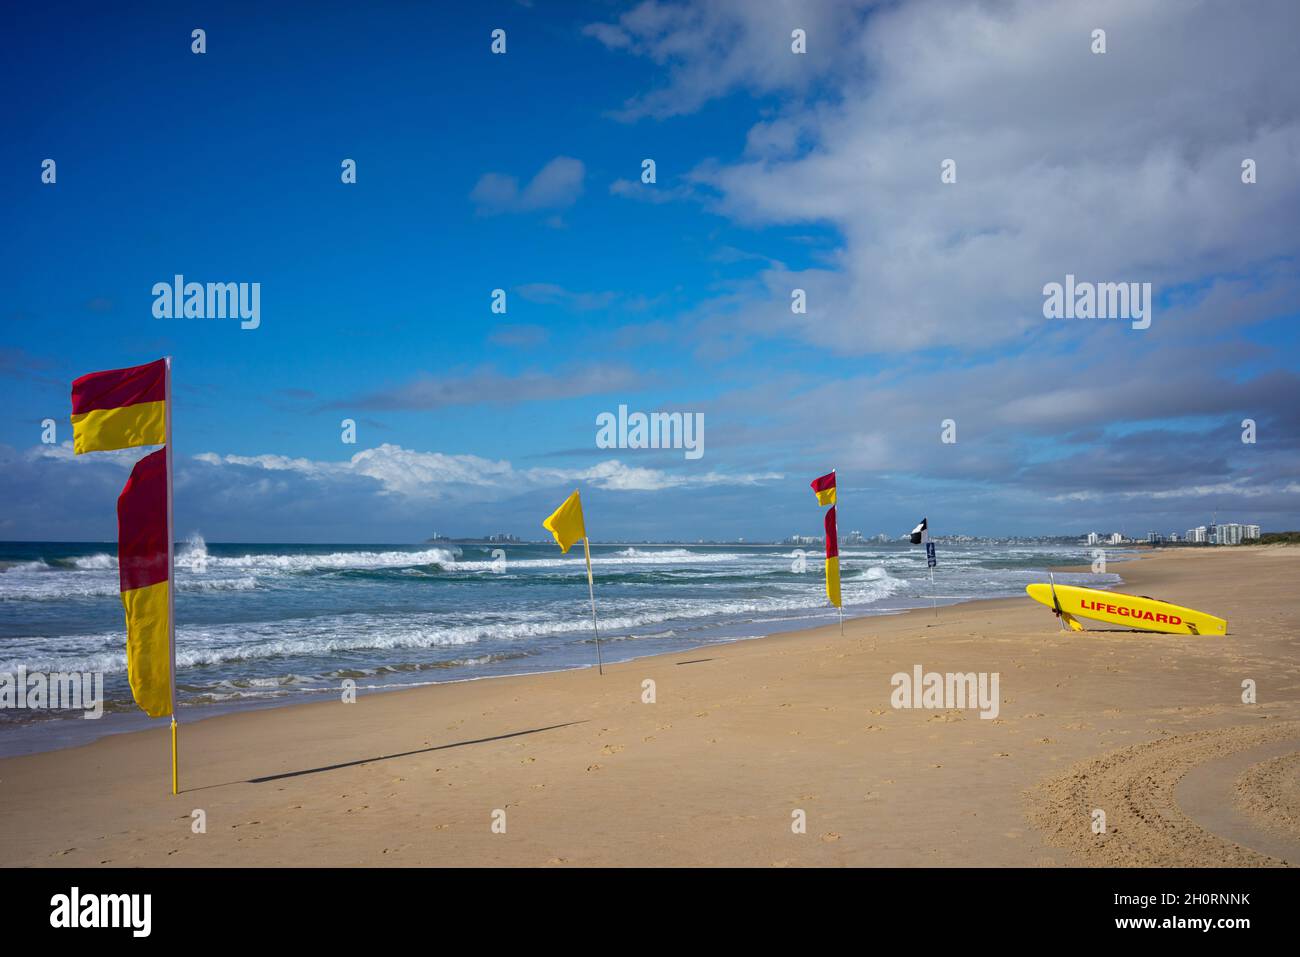 Salvavidas, tablas de surf y banderas de advertencia en la playa, Mudjimba Beach, Queensland, Australia Foto de stock